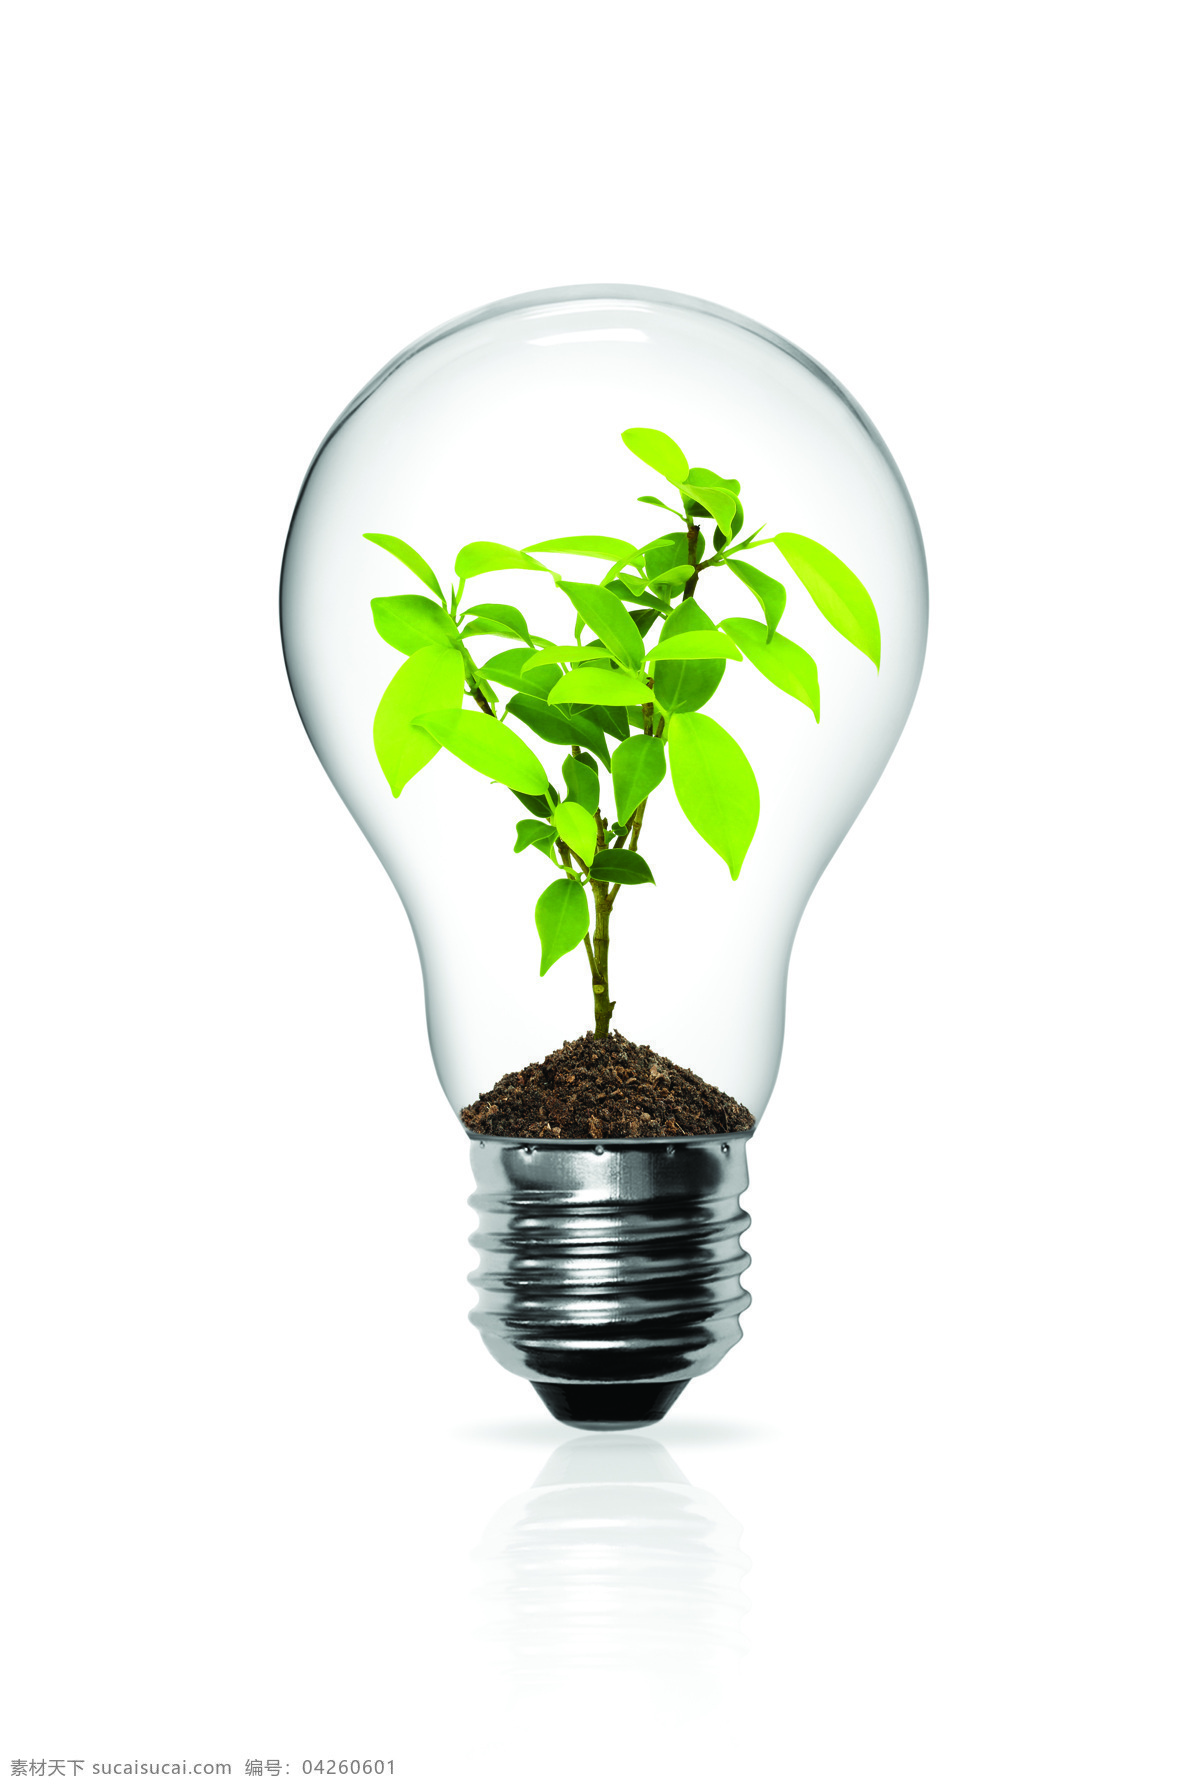 创意 电灯 设计素材 植物 树叶 电灯素材 电灯设计 效果图 节能 灯泡 生活用品 生活百科